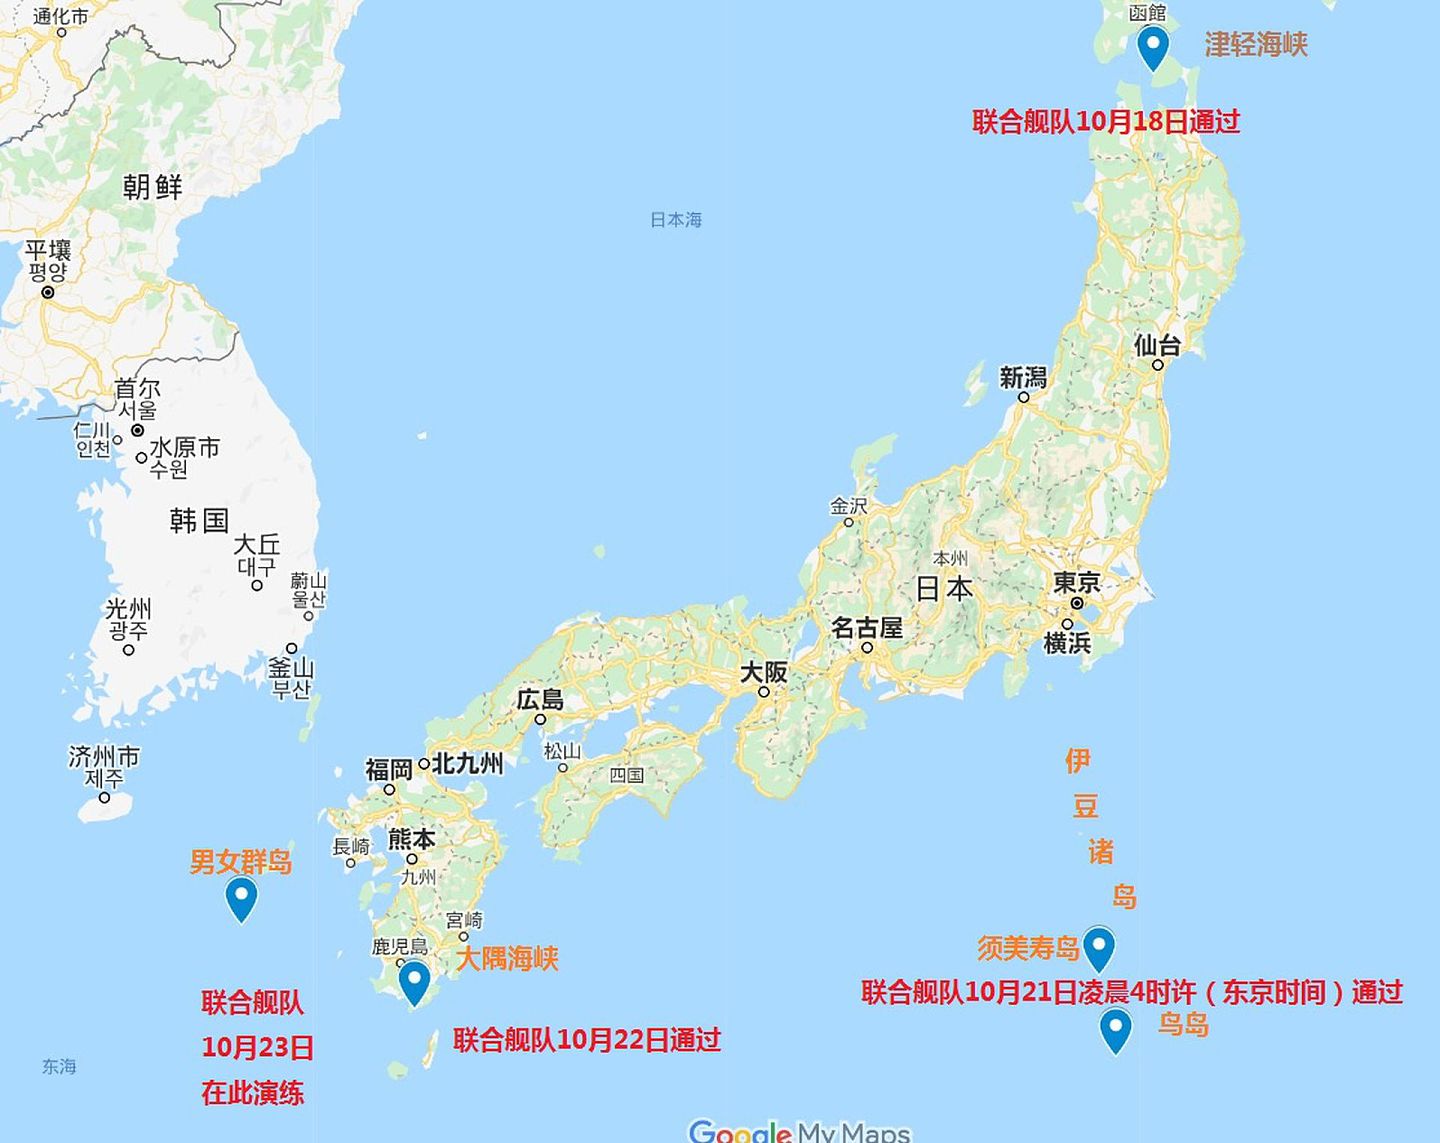 图中所示为中俄联合舰队10月18日至23日间绕日本一周的简明行程。其中日韩曾在2021年1月于男女群岛一线展开过针对专属经济区的公务船对峙。（谷歌地图网页截图）